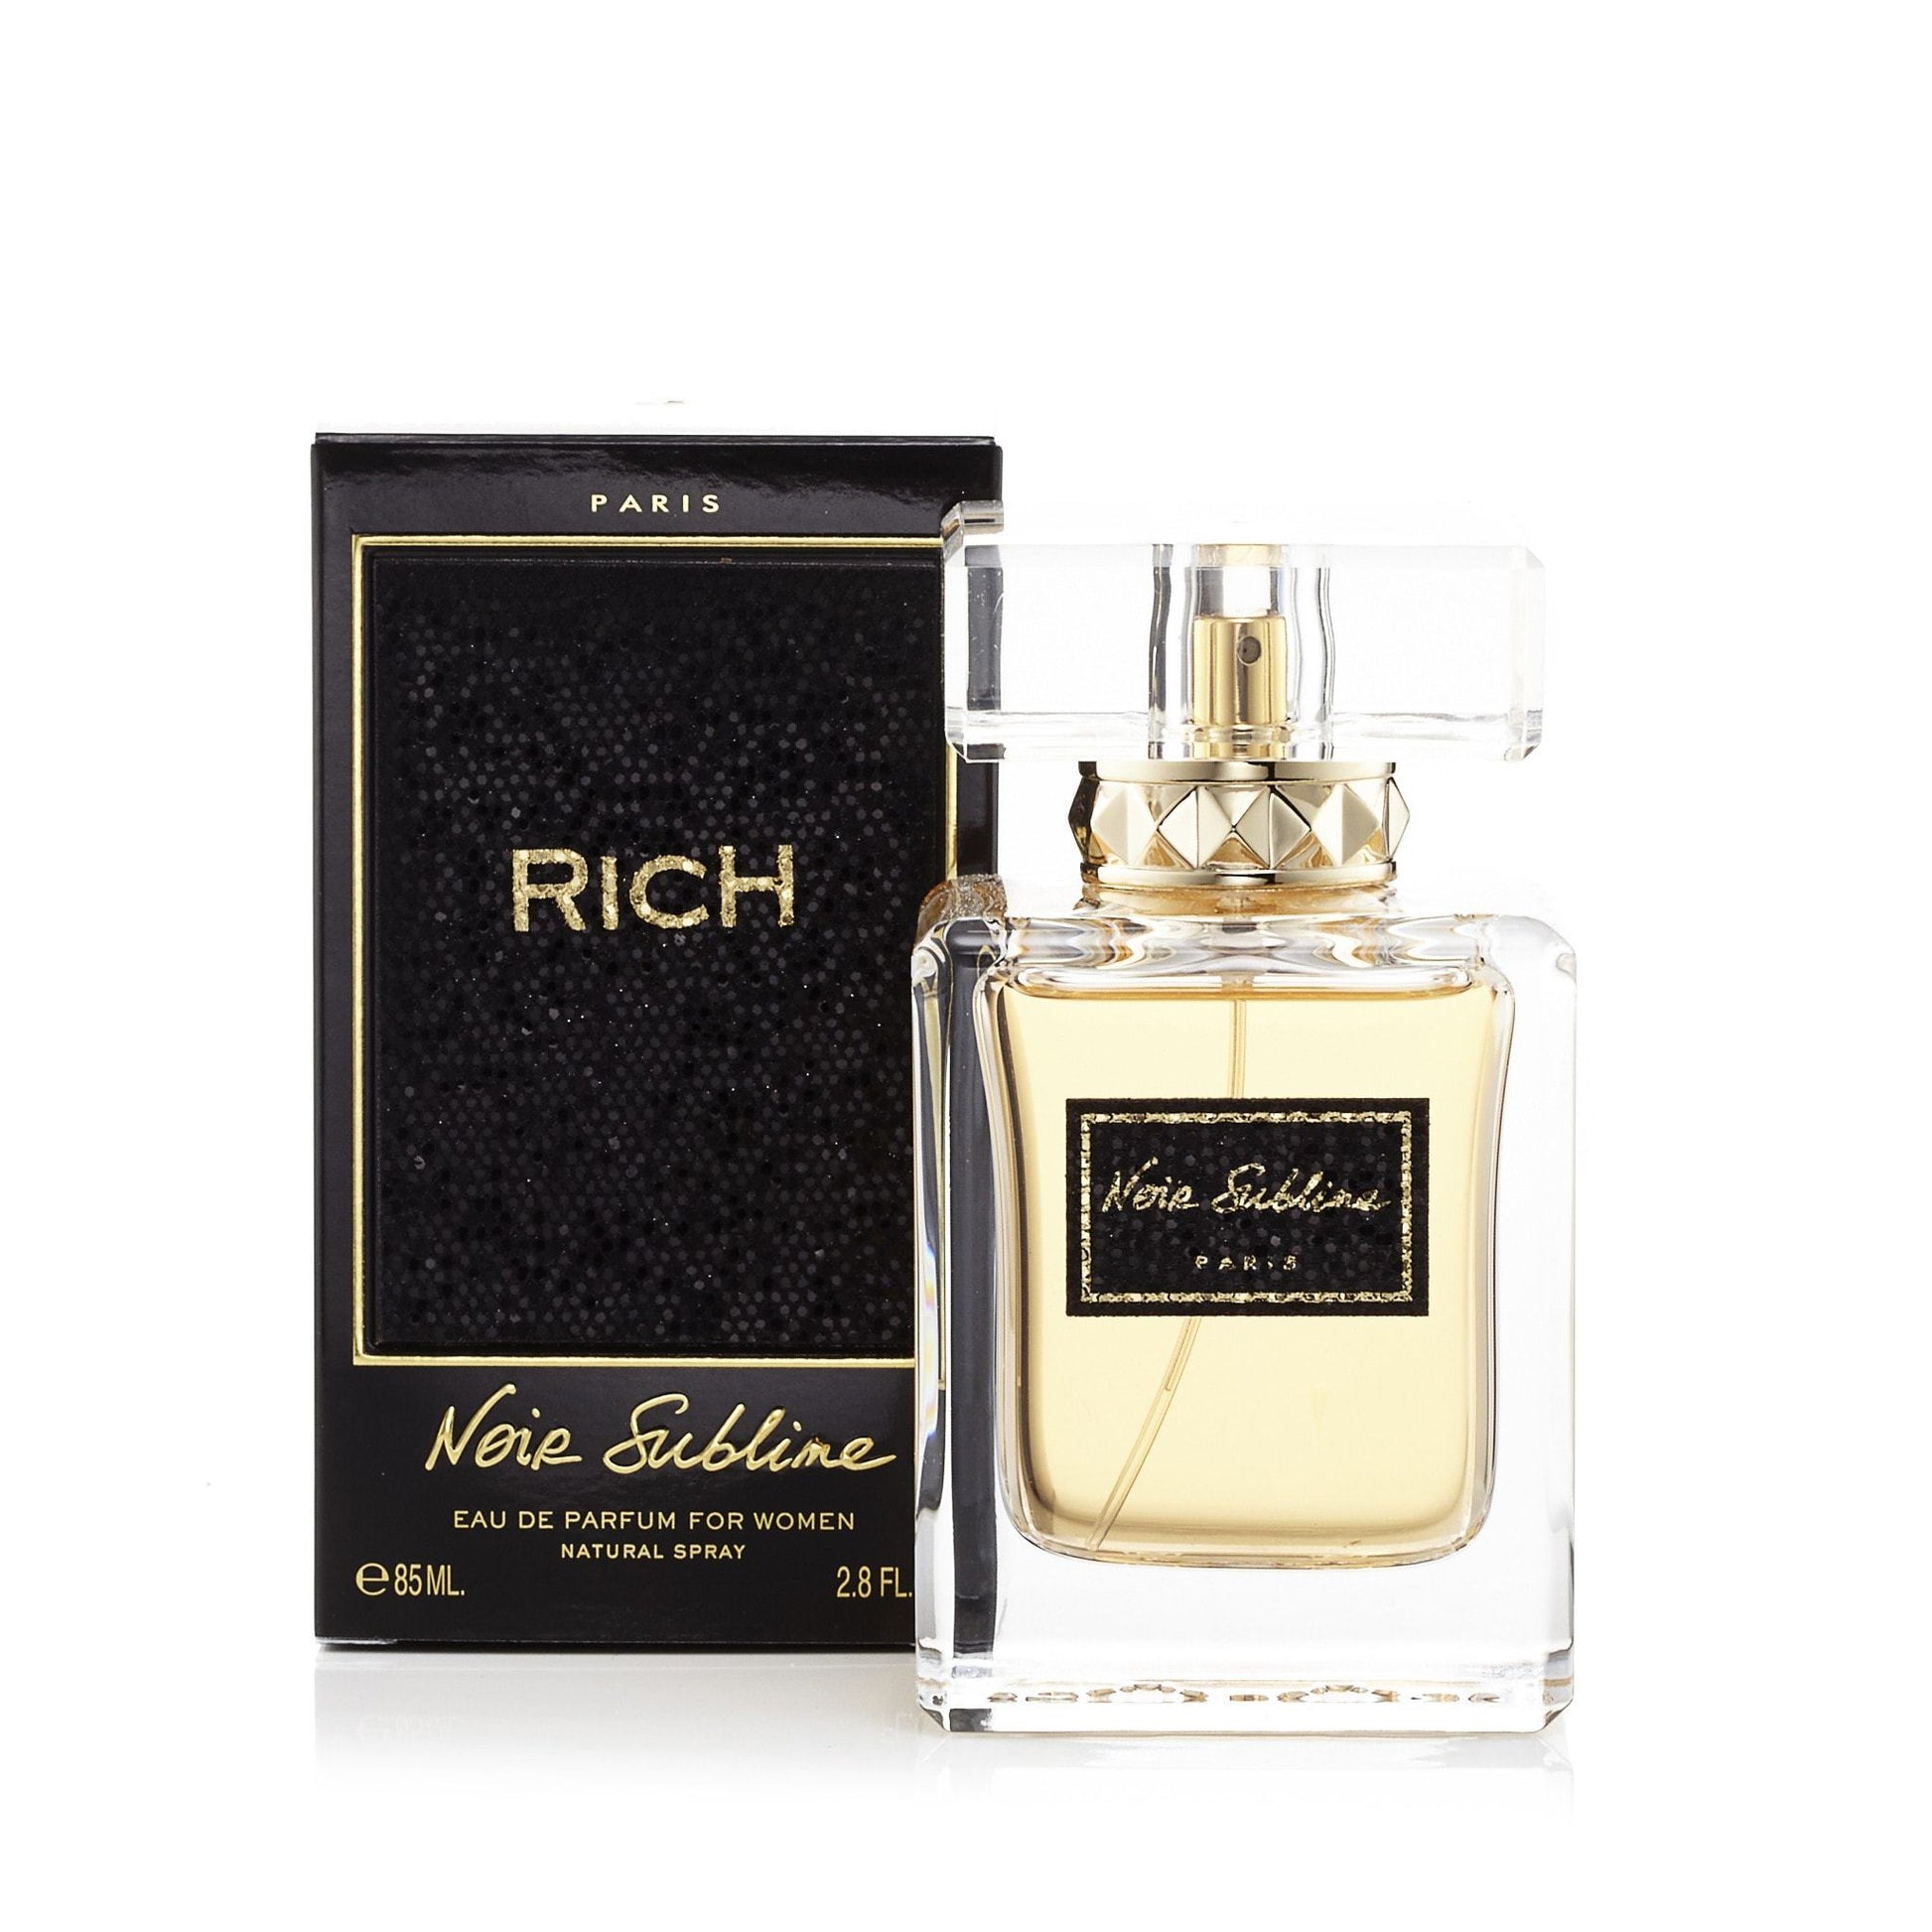 Rich Noir Sublime Eau de Parfum Spray for Women, Product image 2